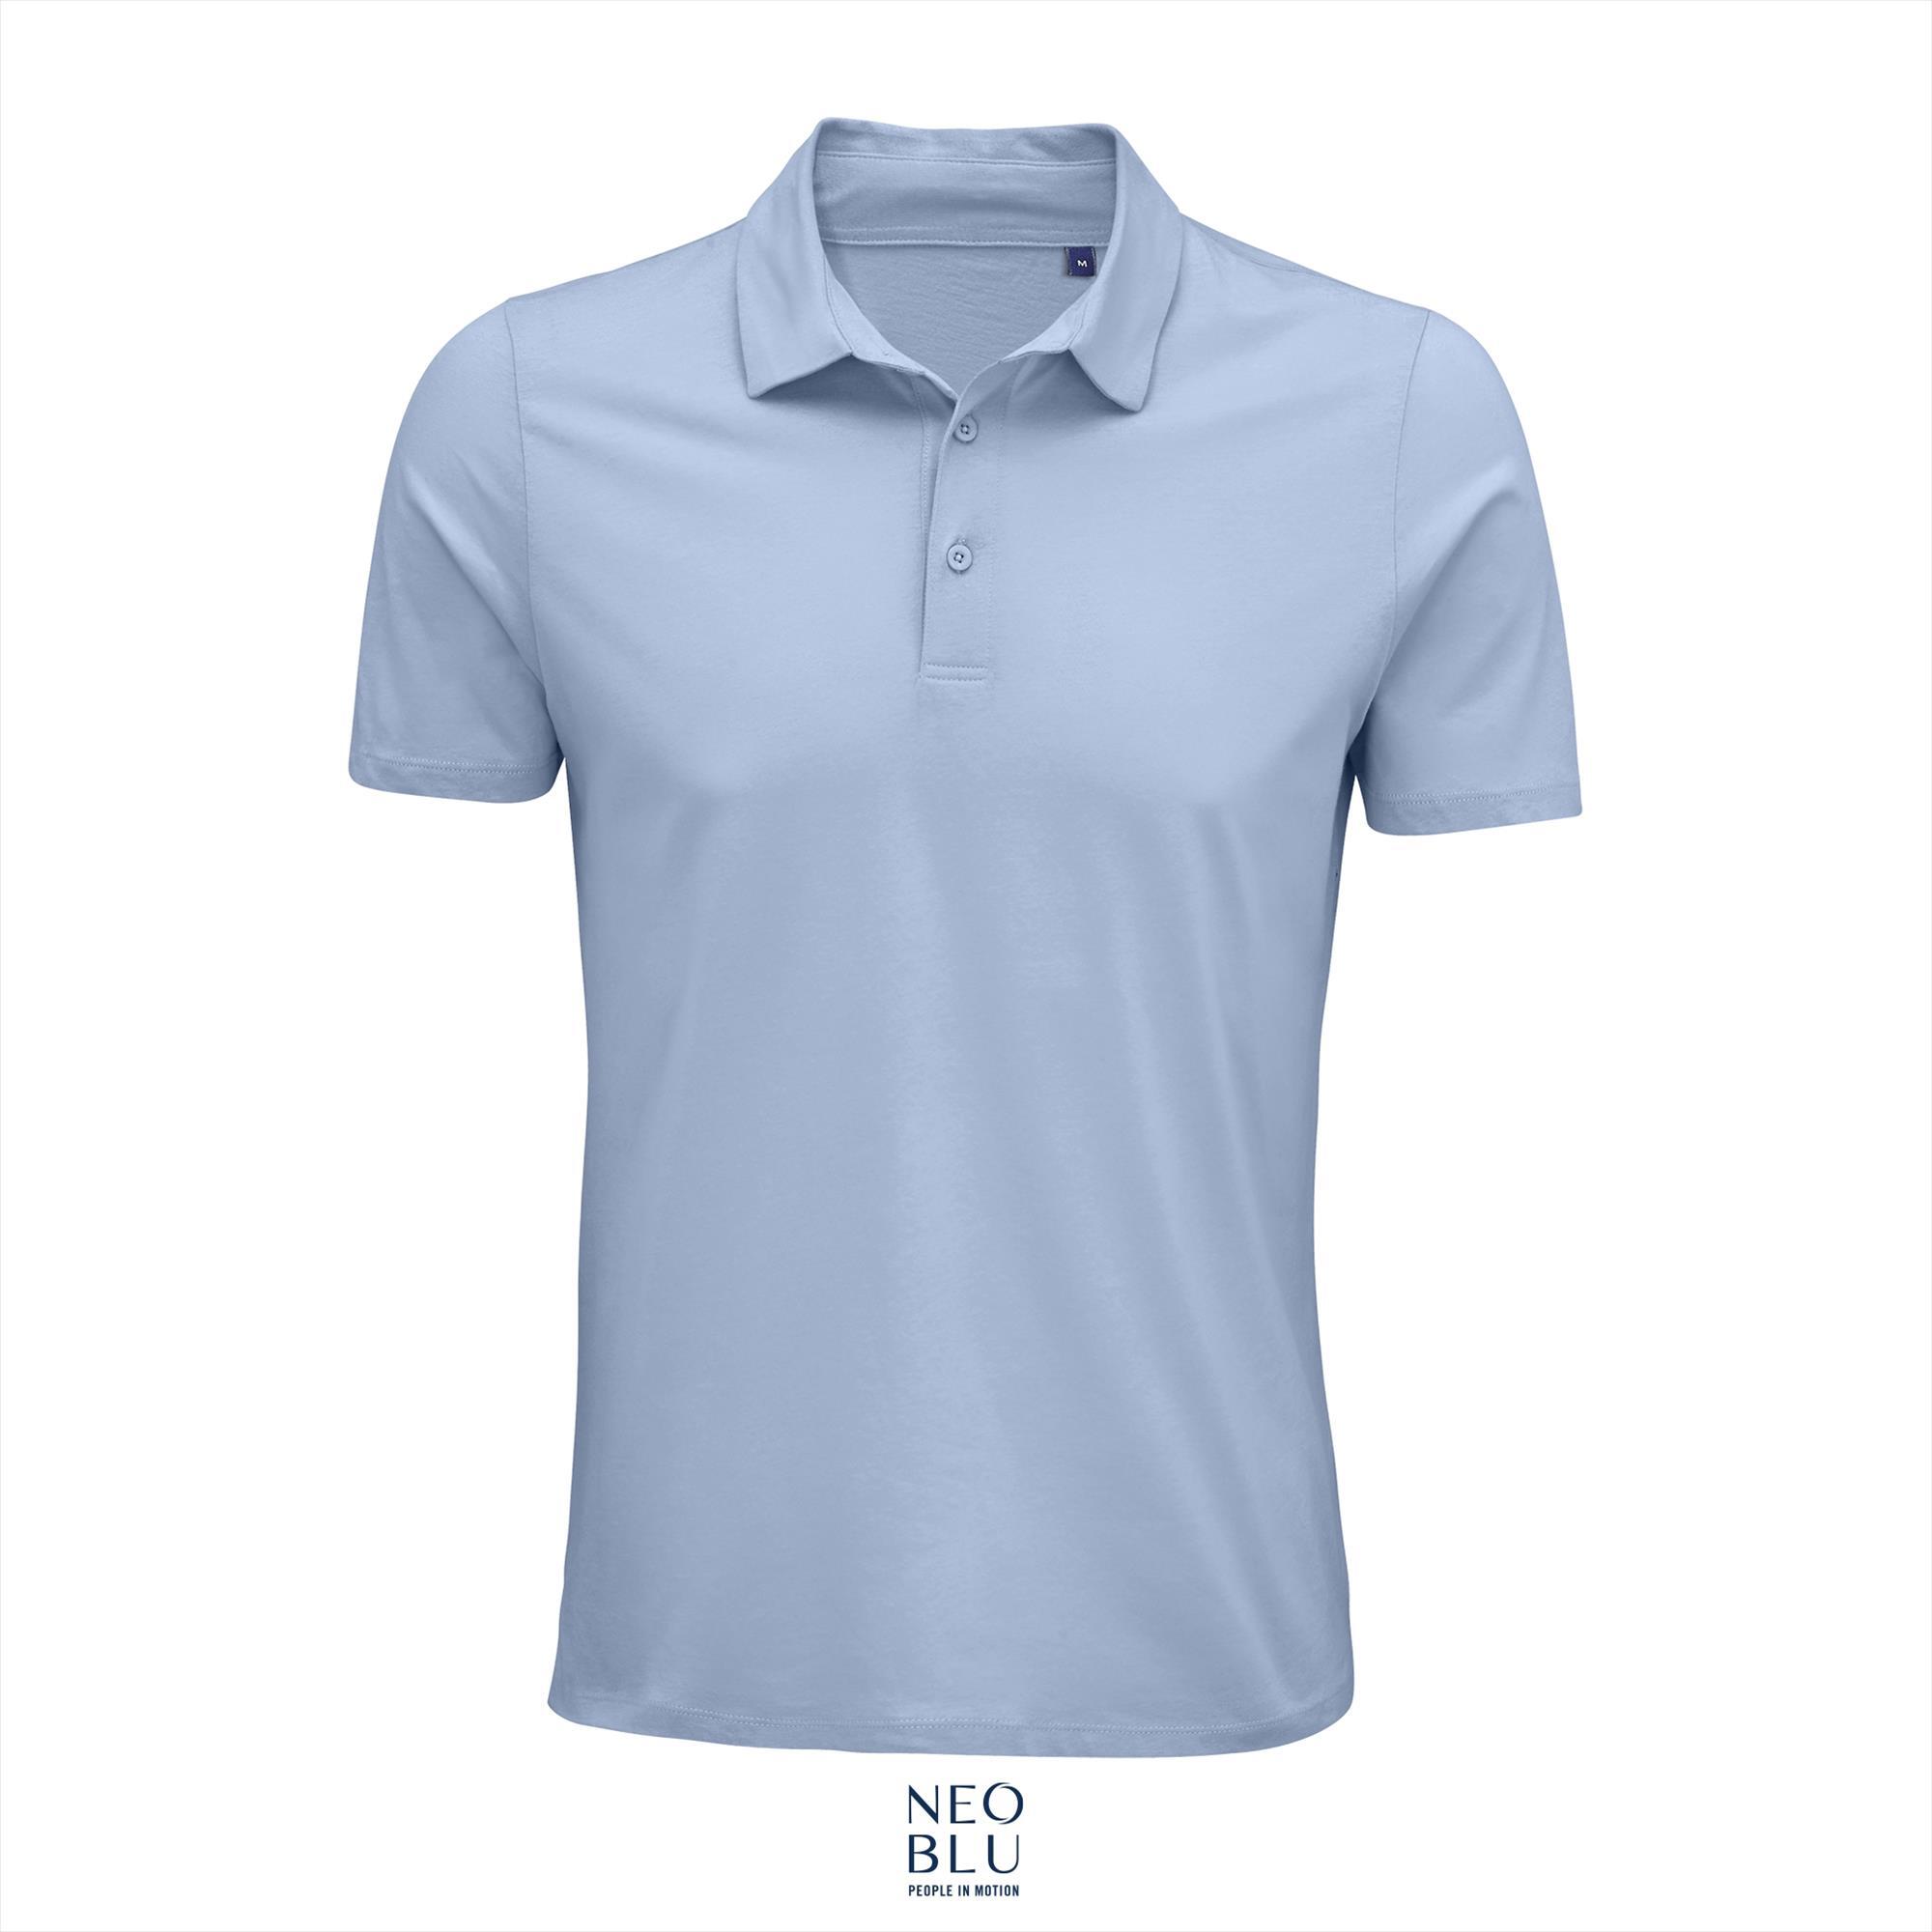 Poloshirt jersey voor mannen soft blue polo